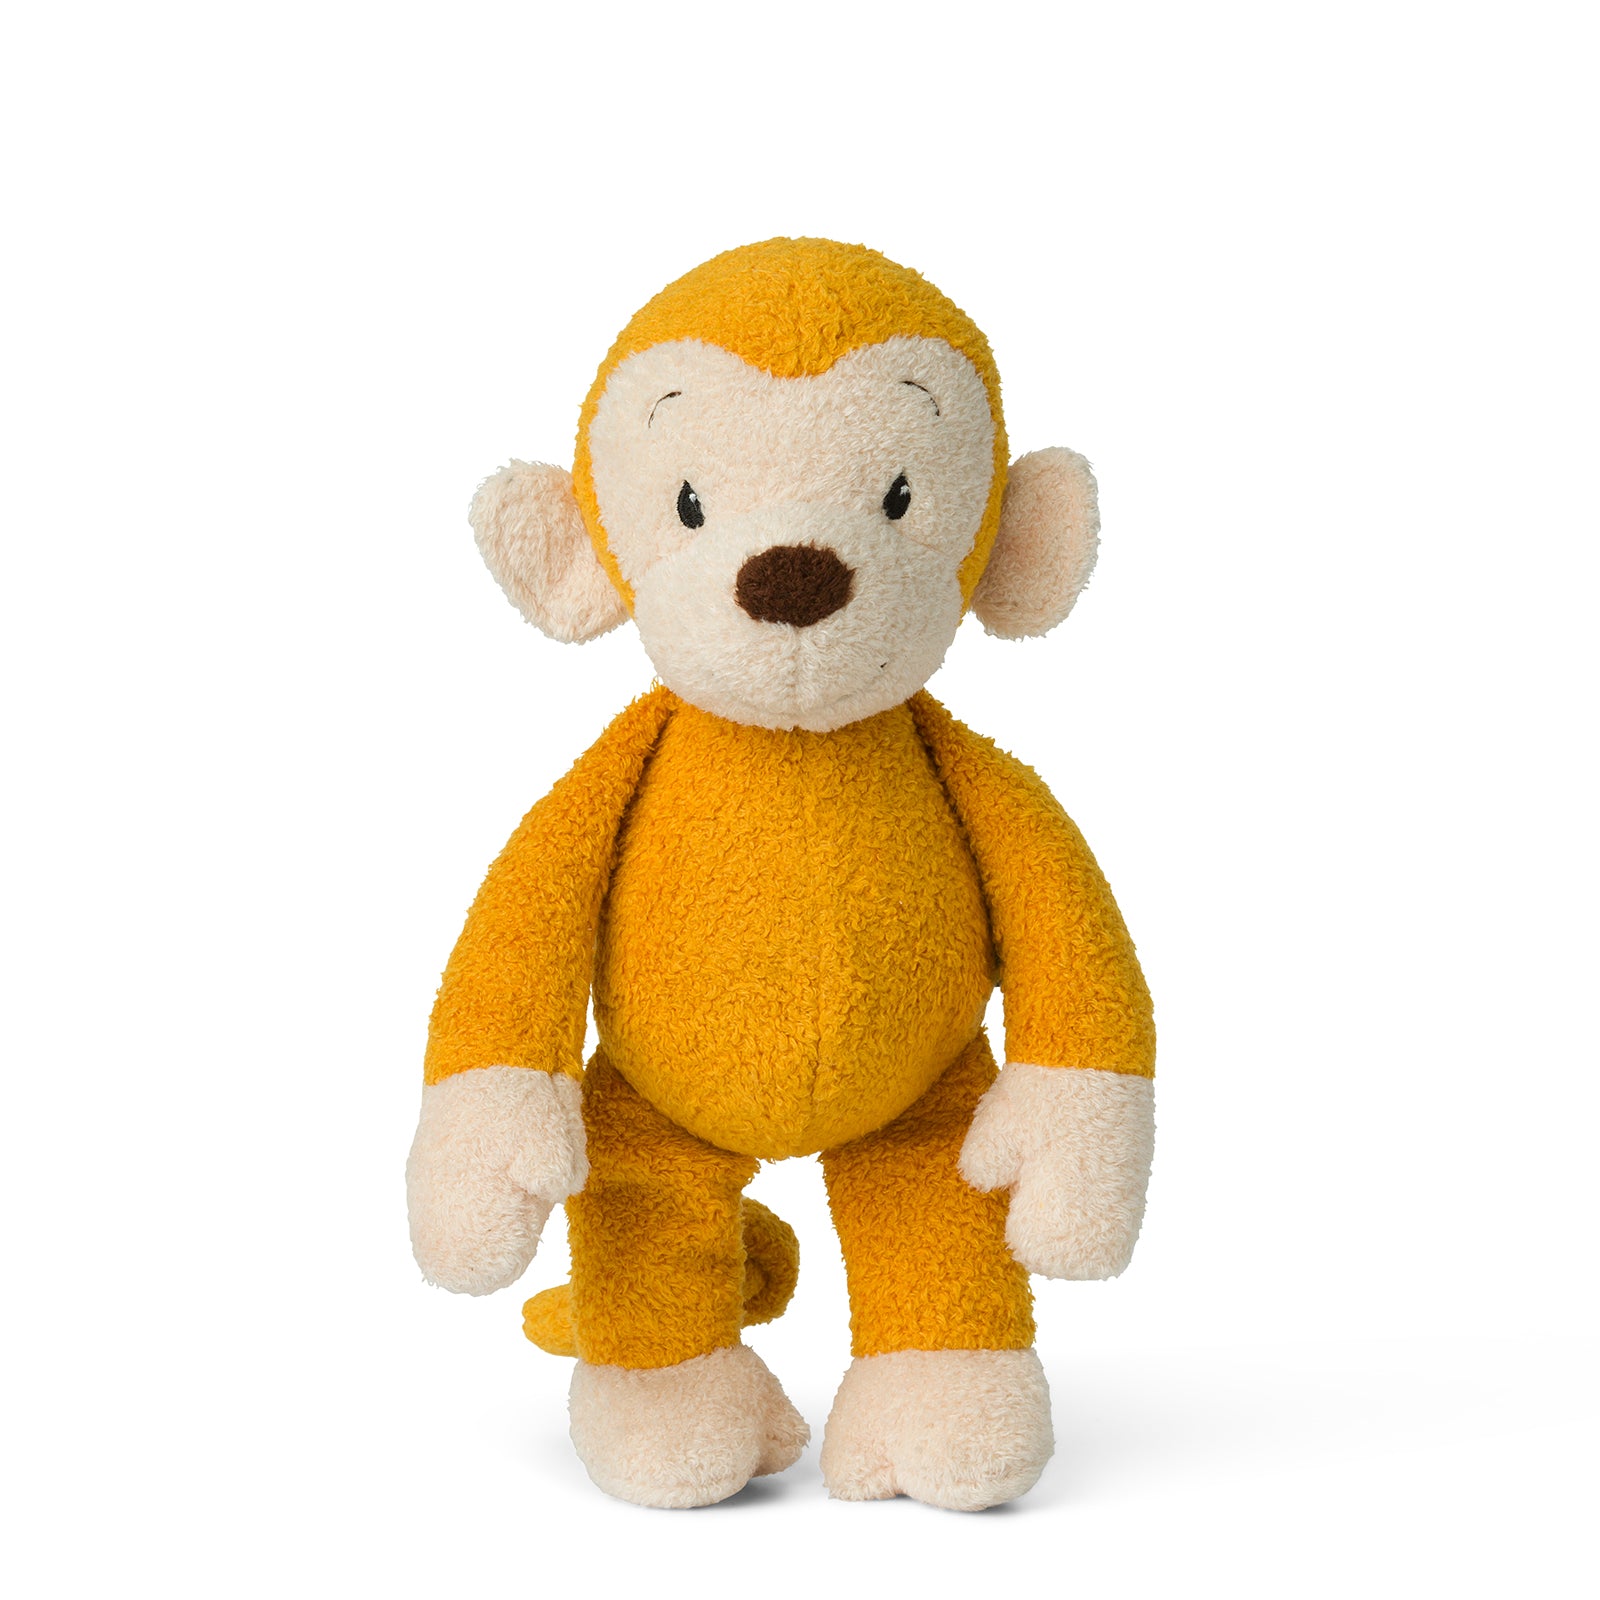 Doudou Mago le singe jaune – WWF France